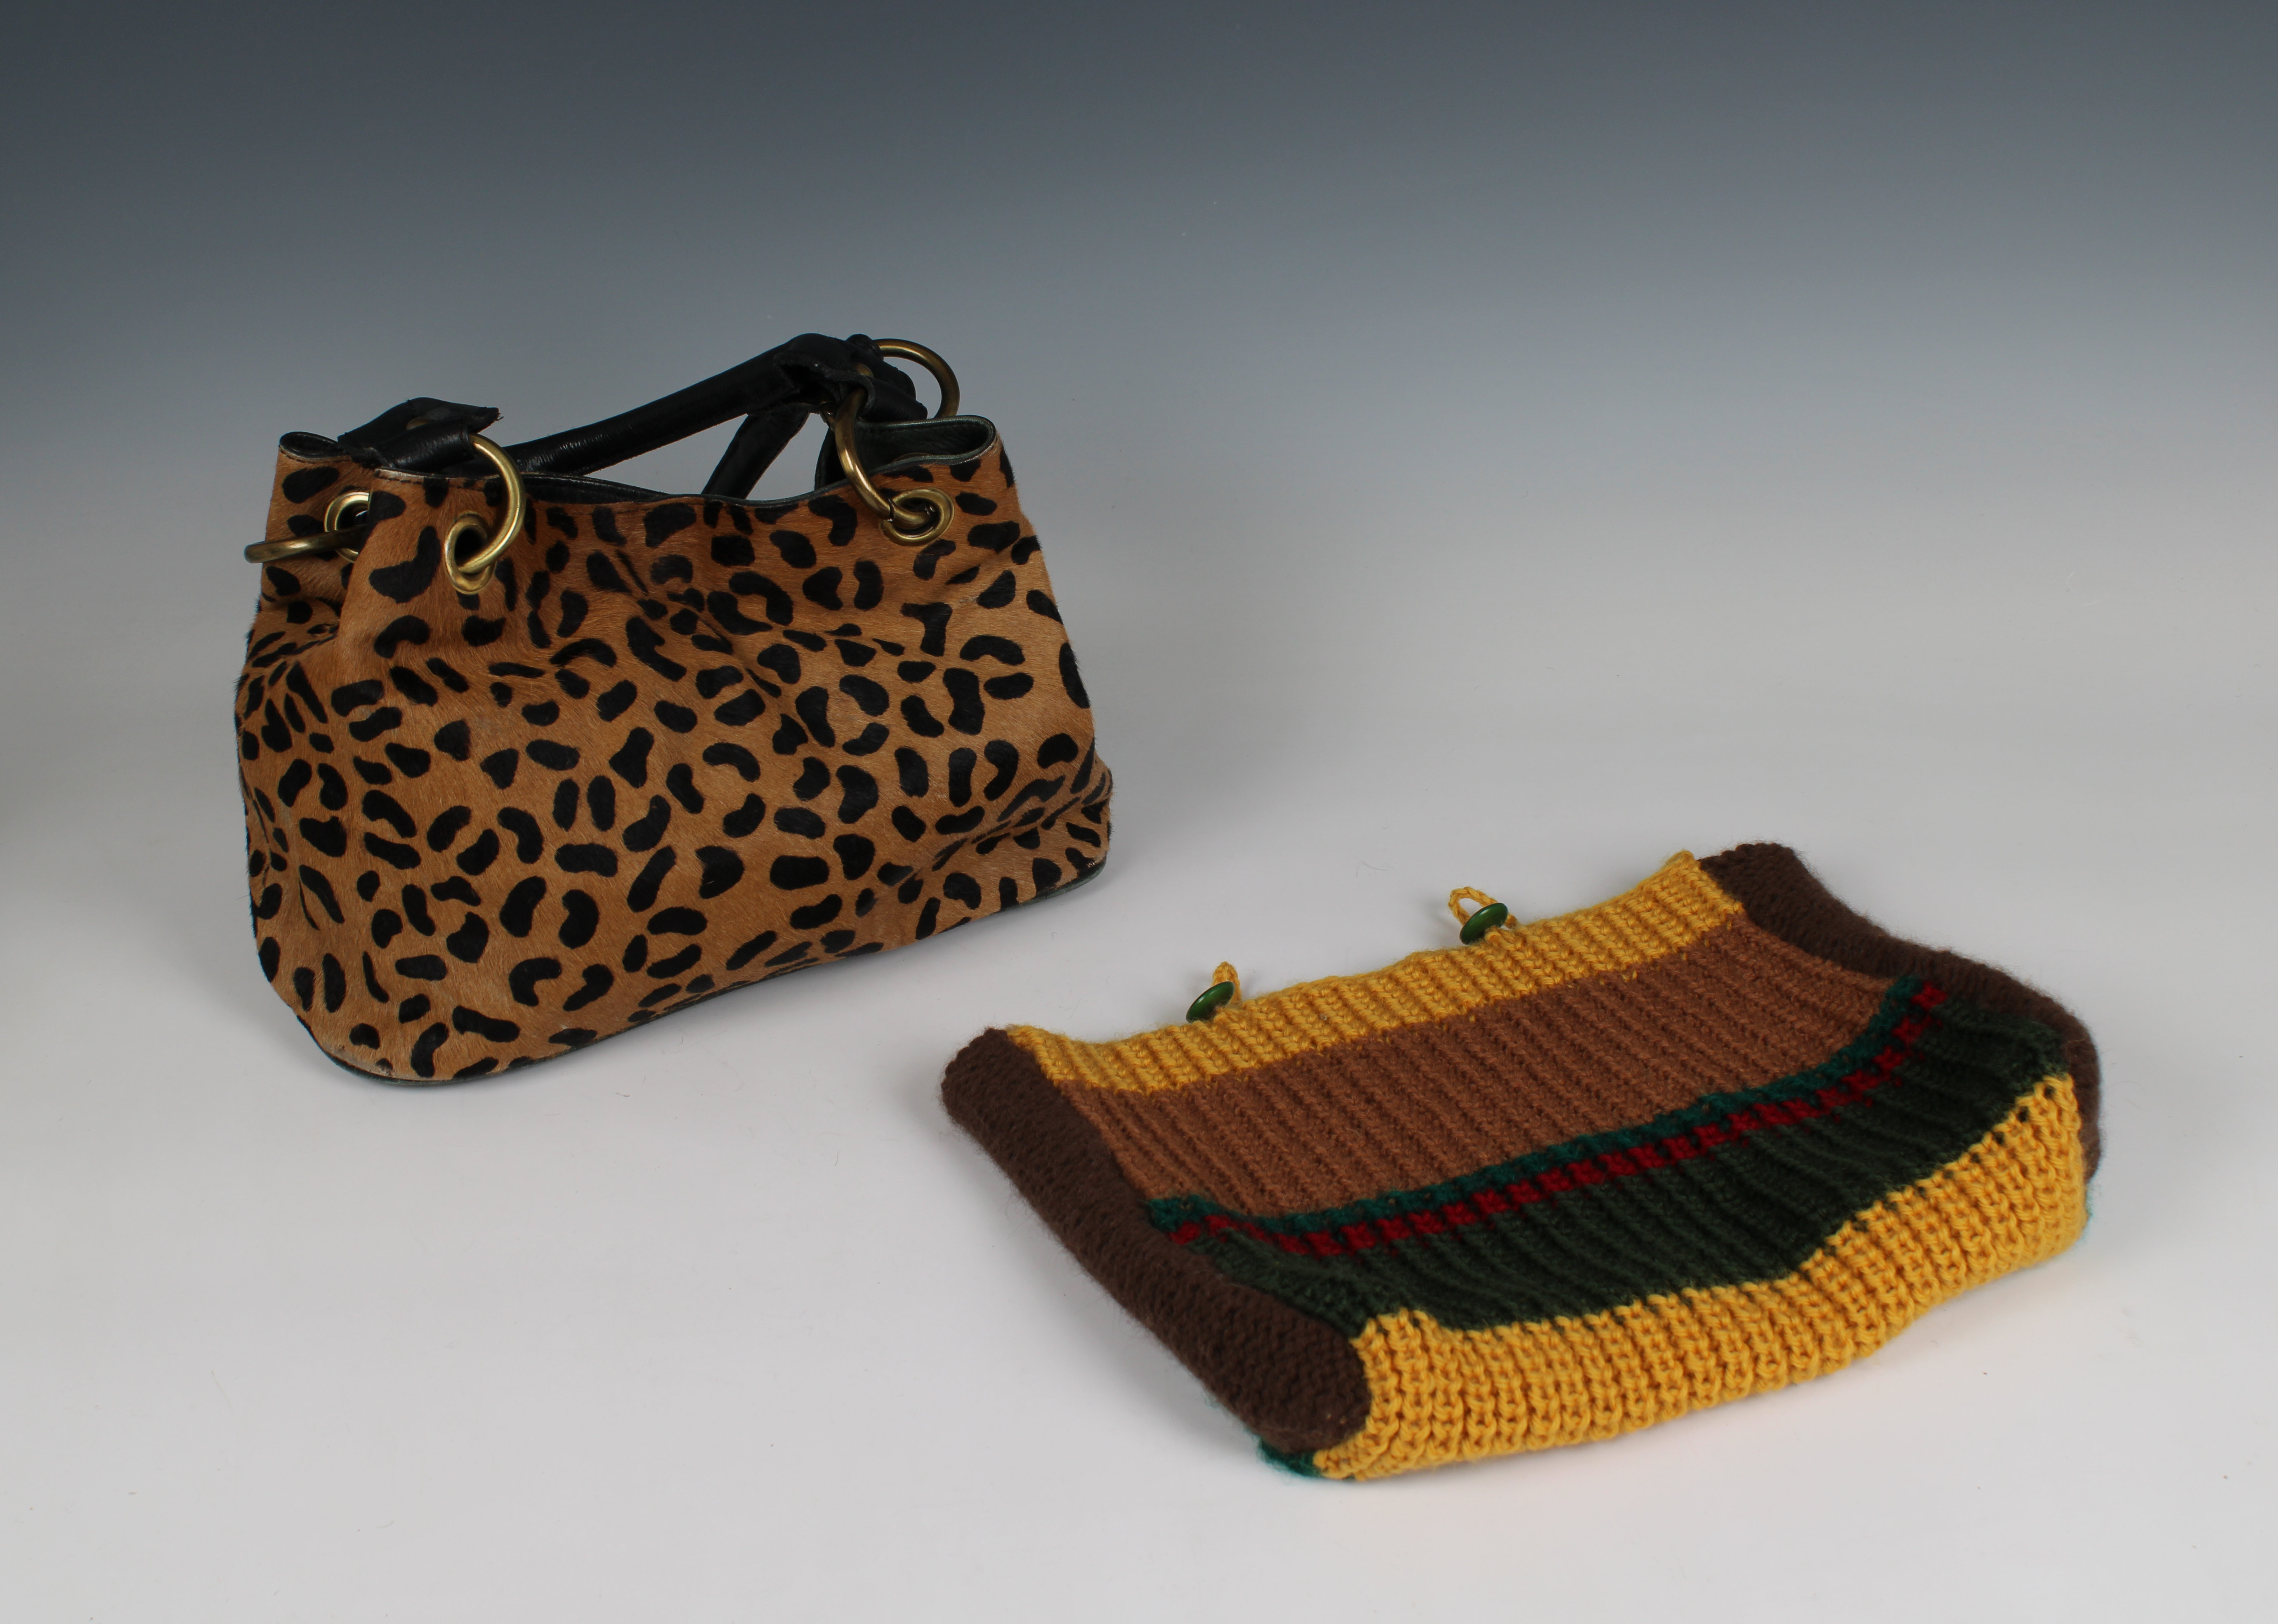 Two crocodile skin vintage handbags by Fassbender - Image 3 of 3